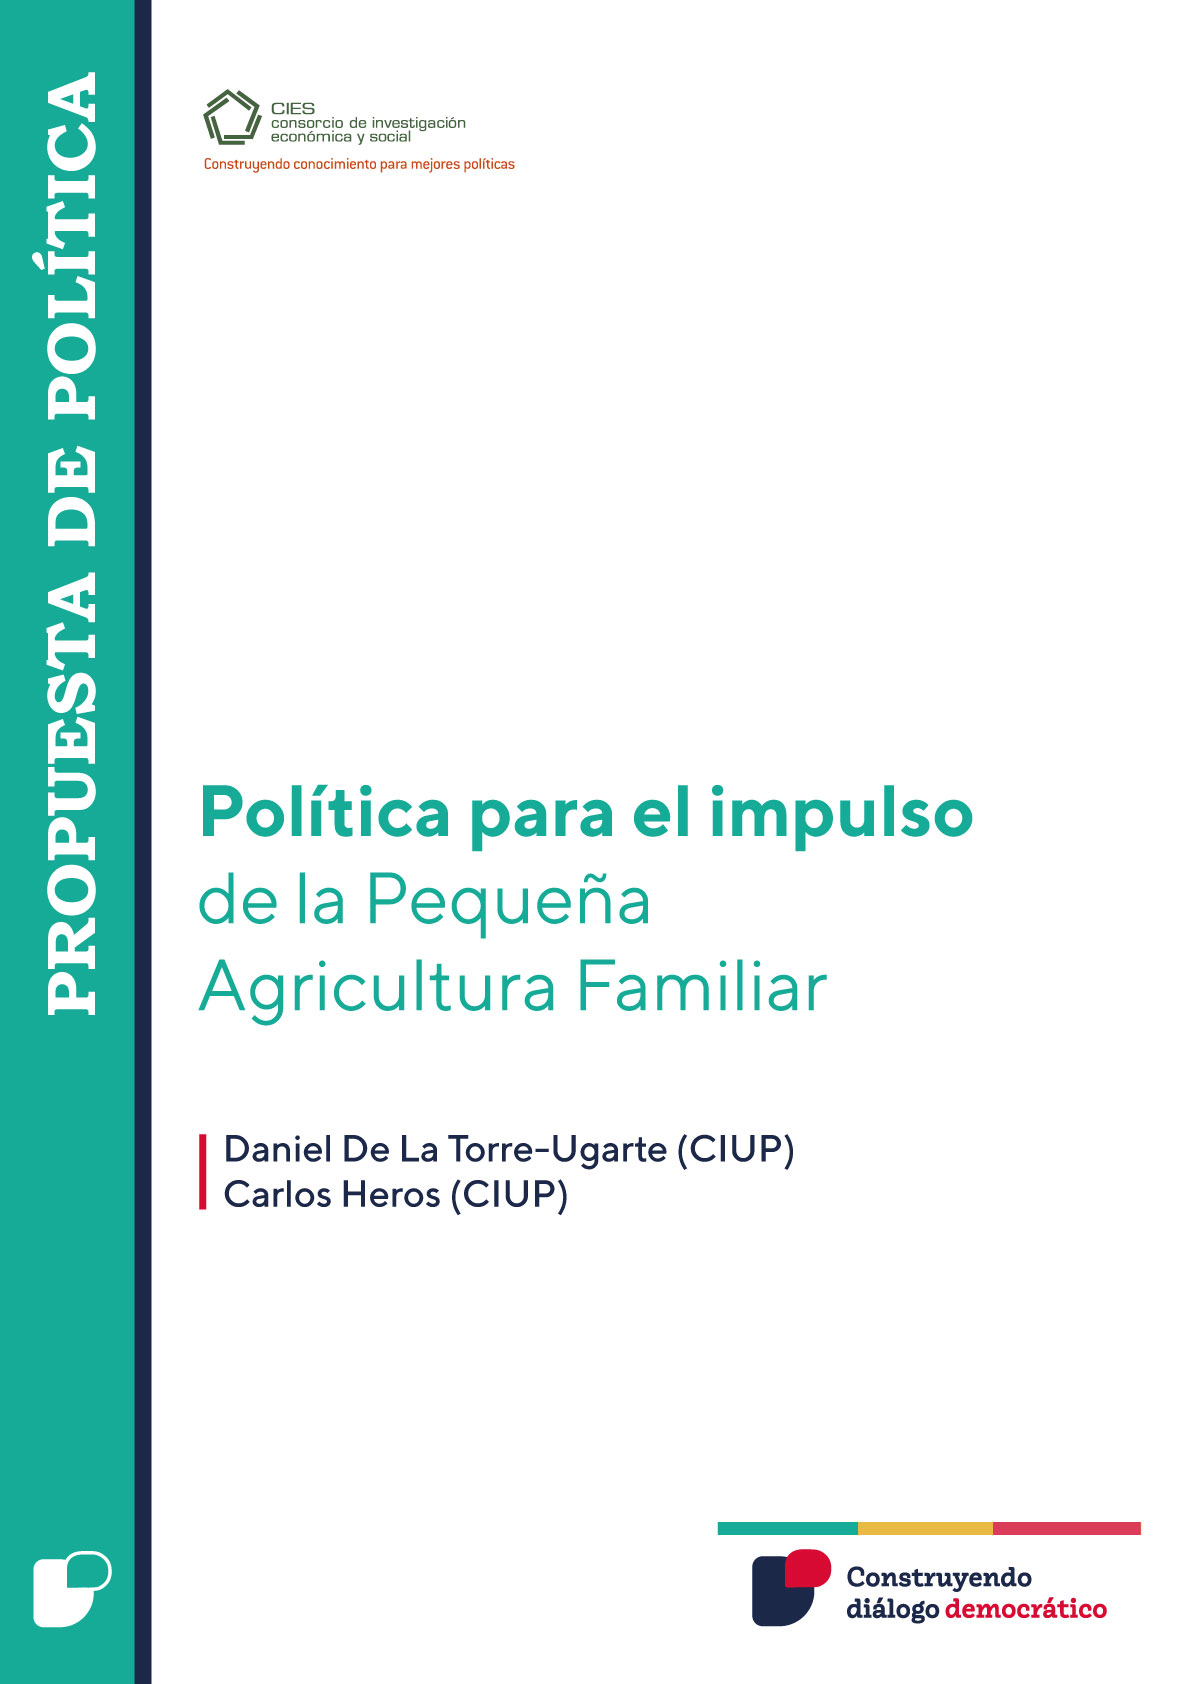 Política para el impulso de la Pequeña Agricultura Familiar